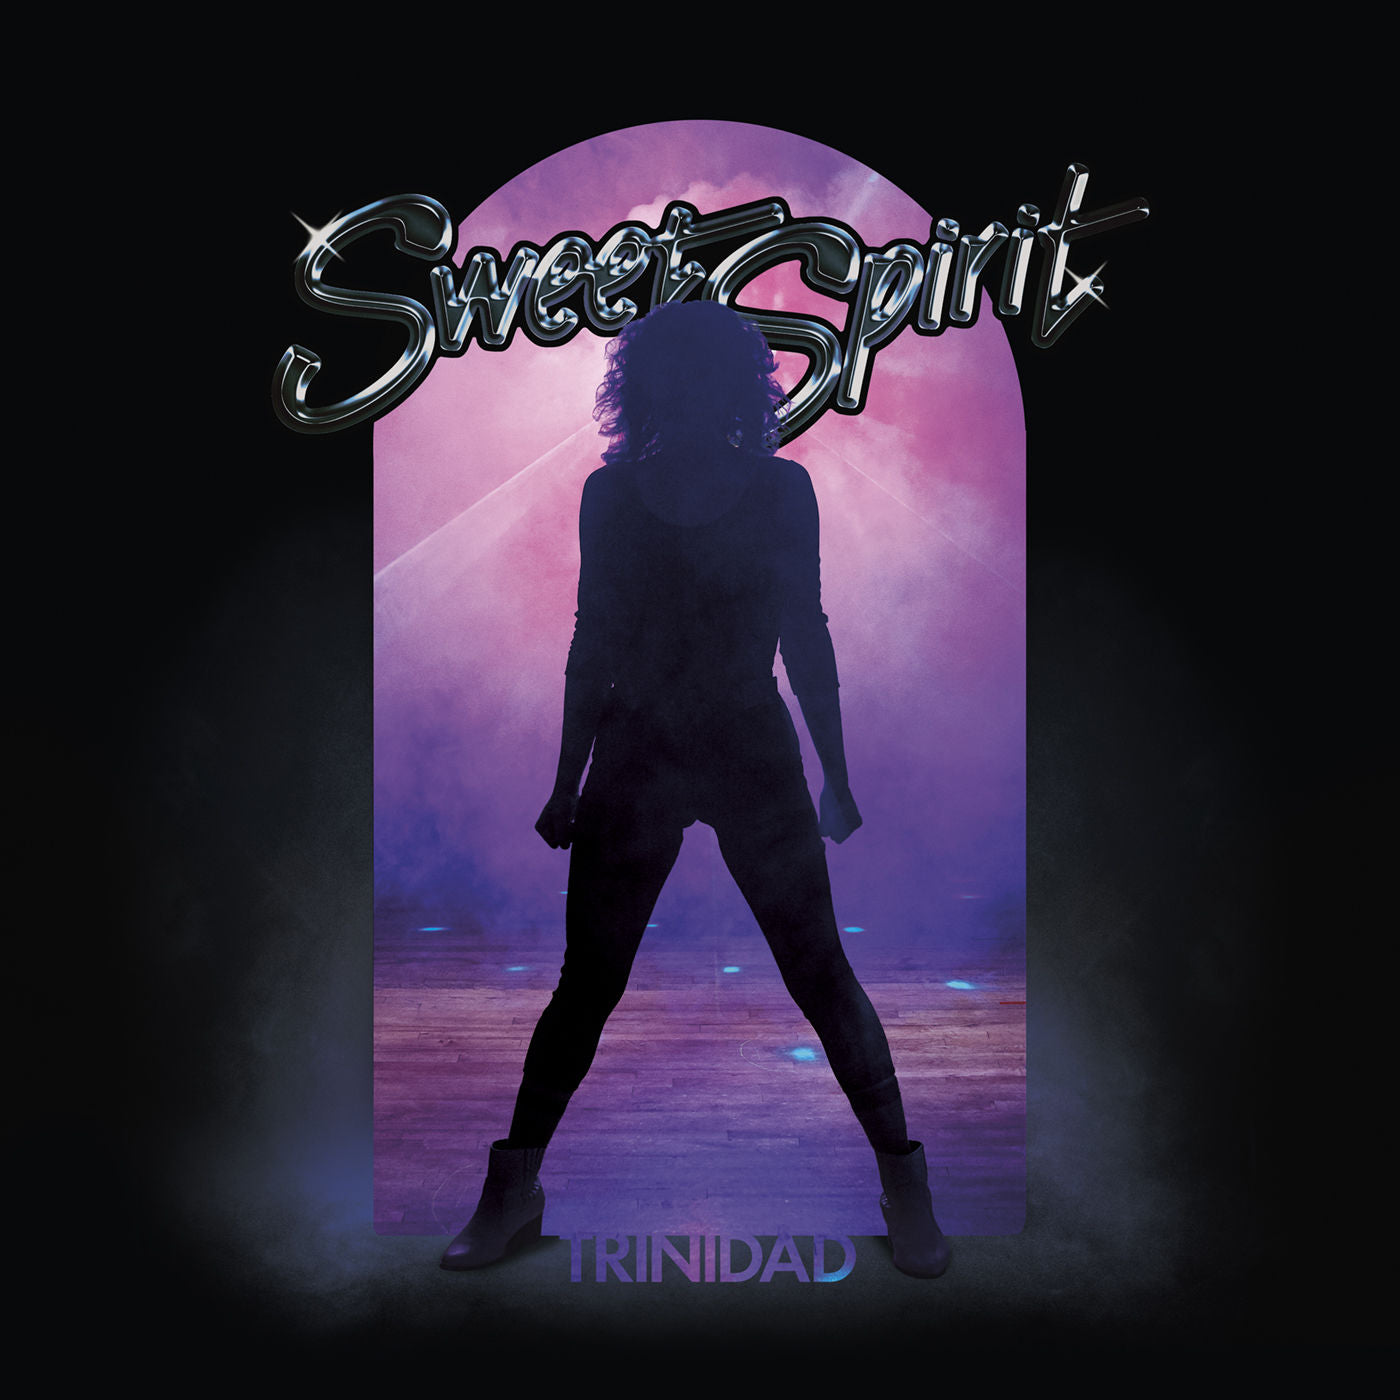 Sweet Spirit - Trinidad: Vinyl LP in Custom Die-Cut Sleeve